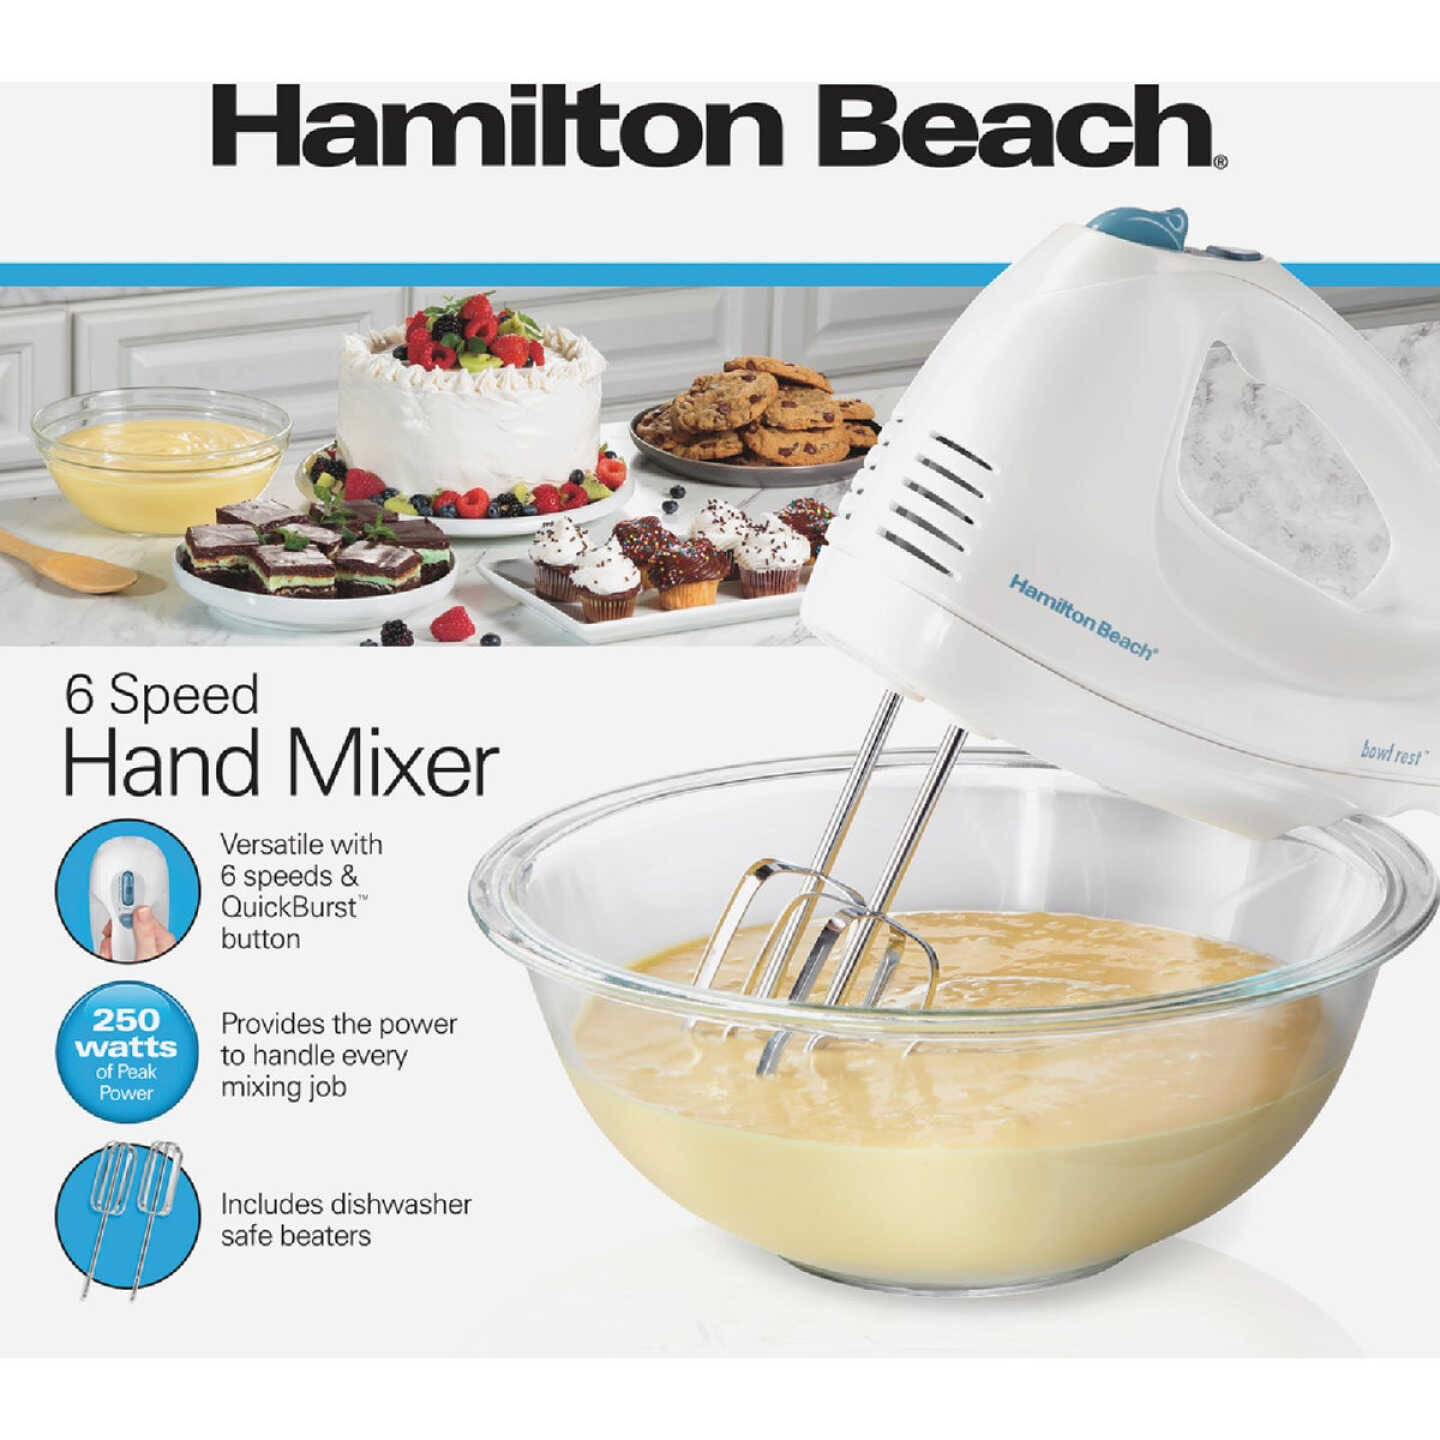 Hamilton Beach 6-Speed Hand Mixer - Power Townsend Company